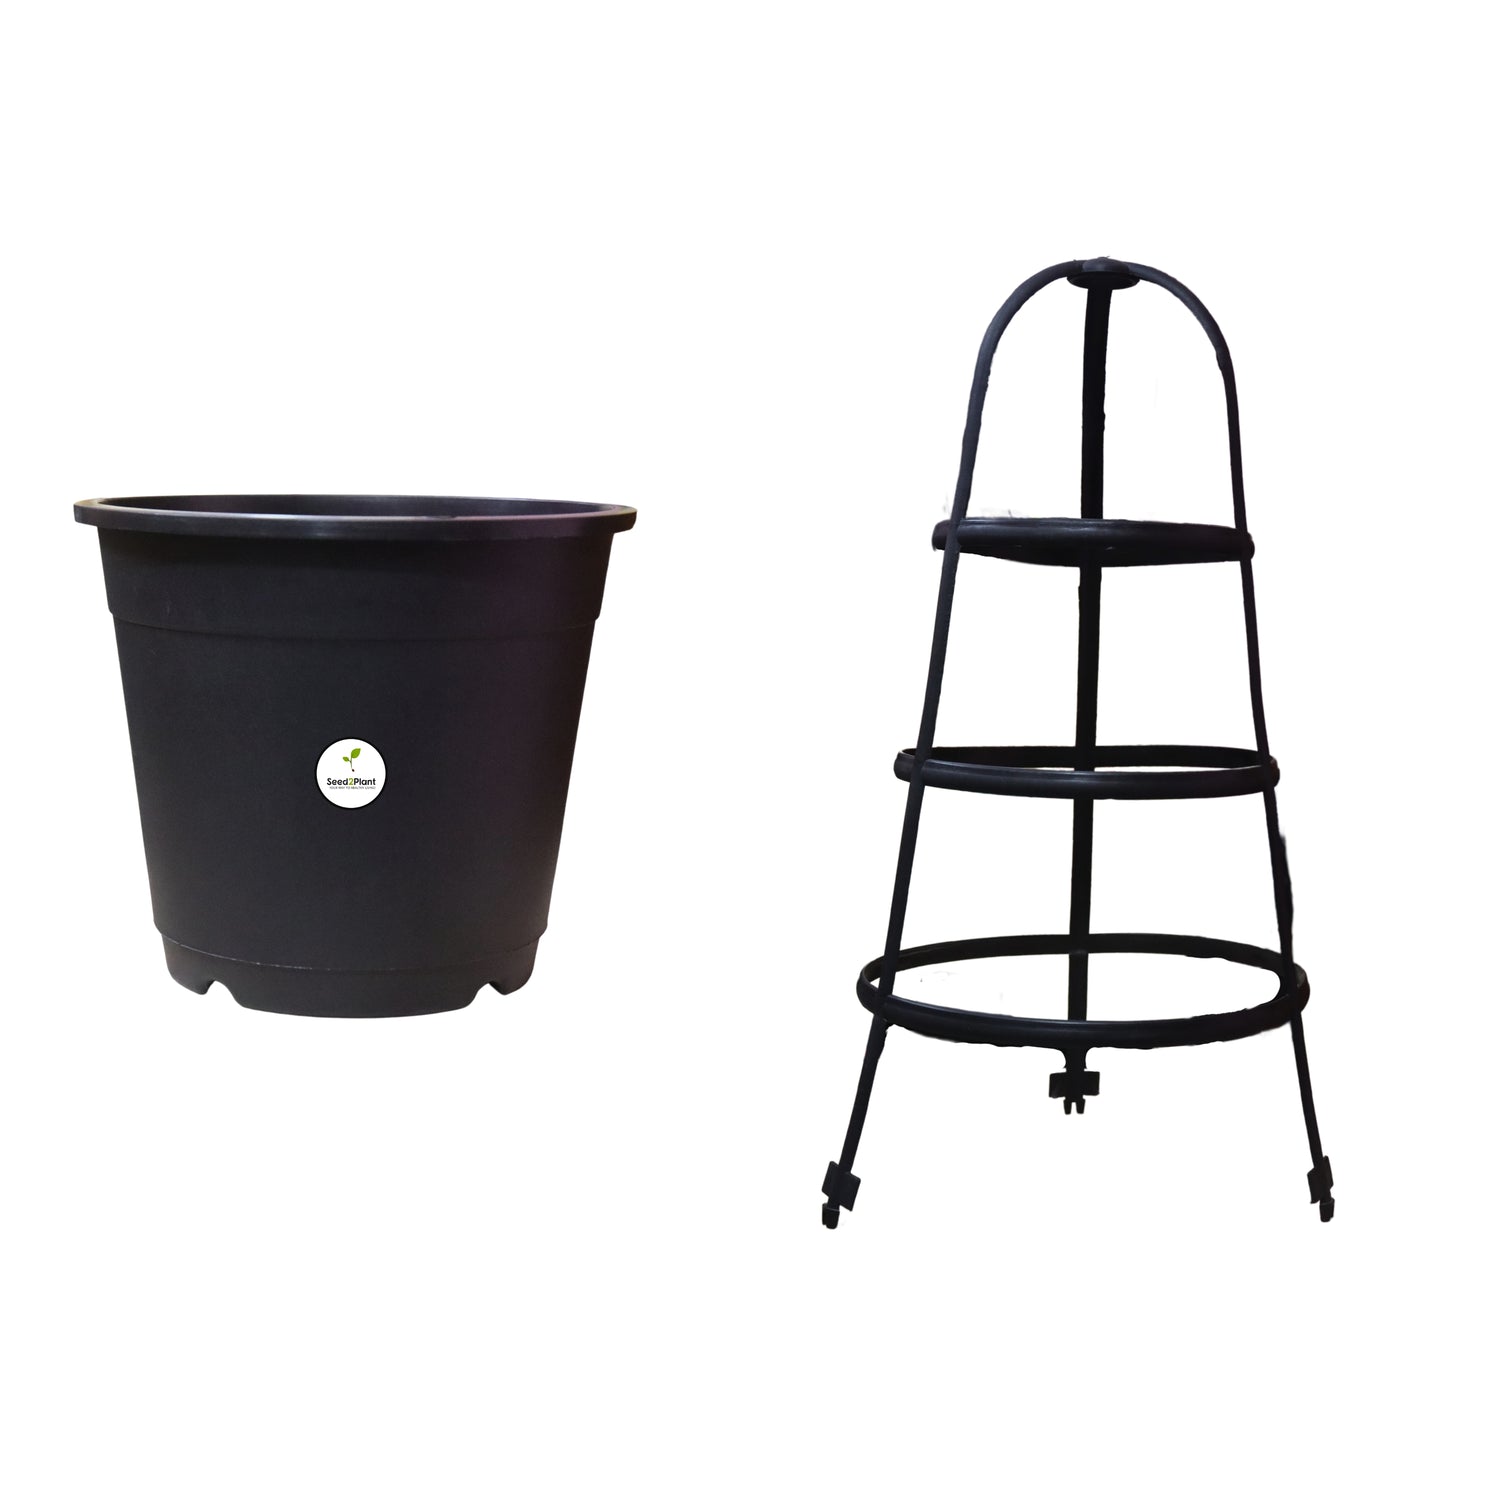 Plastic Trellis Pot / Planter - Black Colour